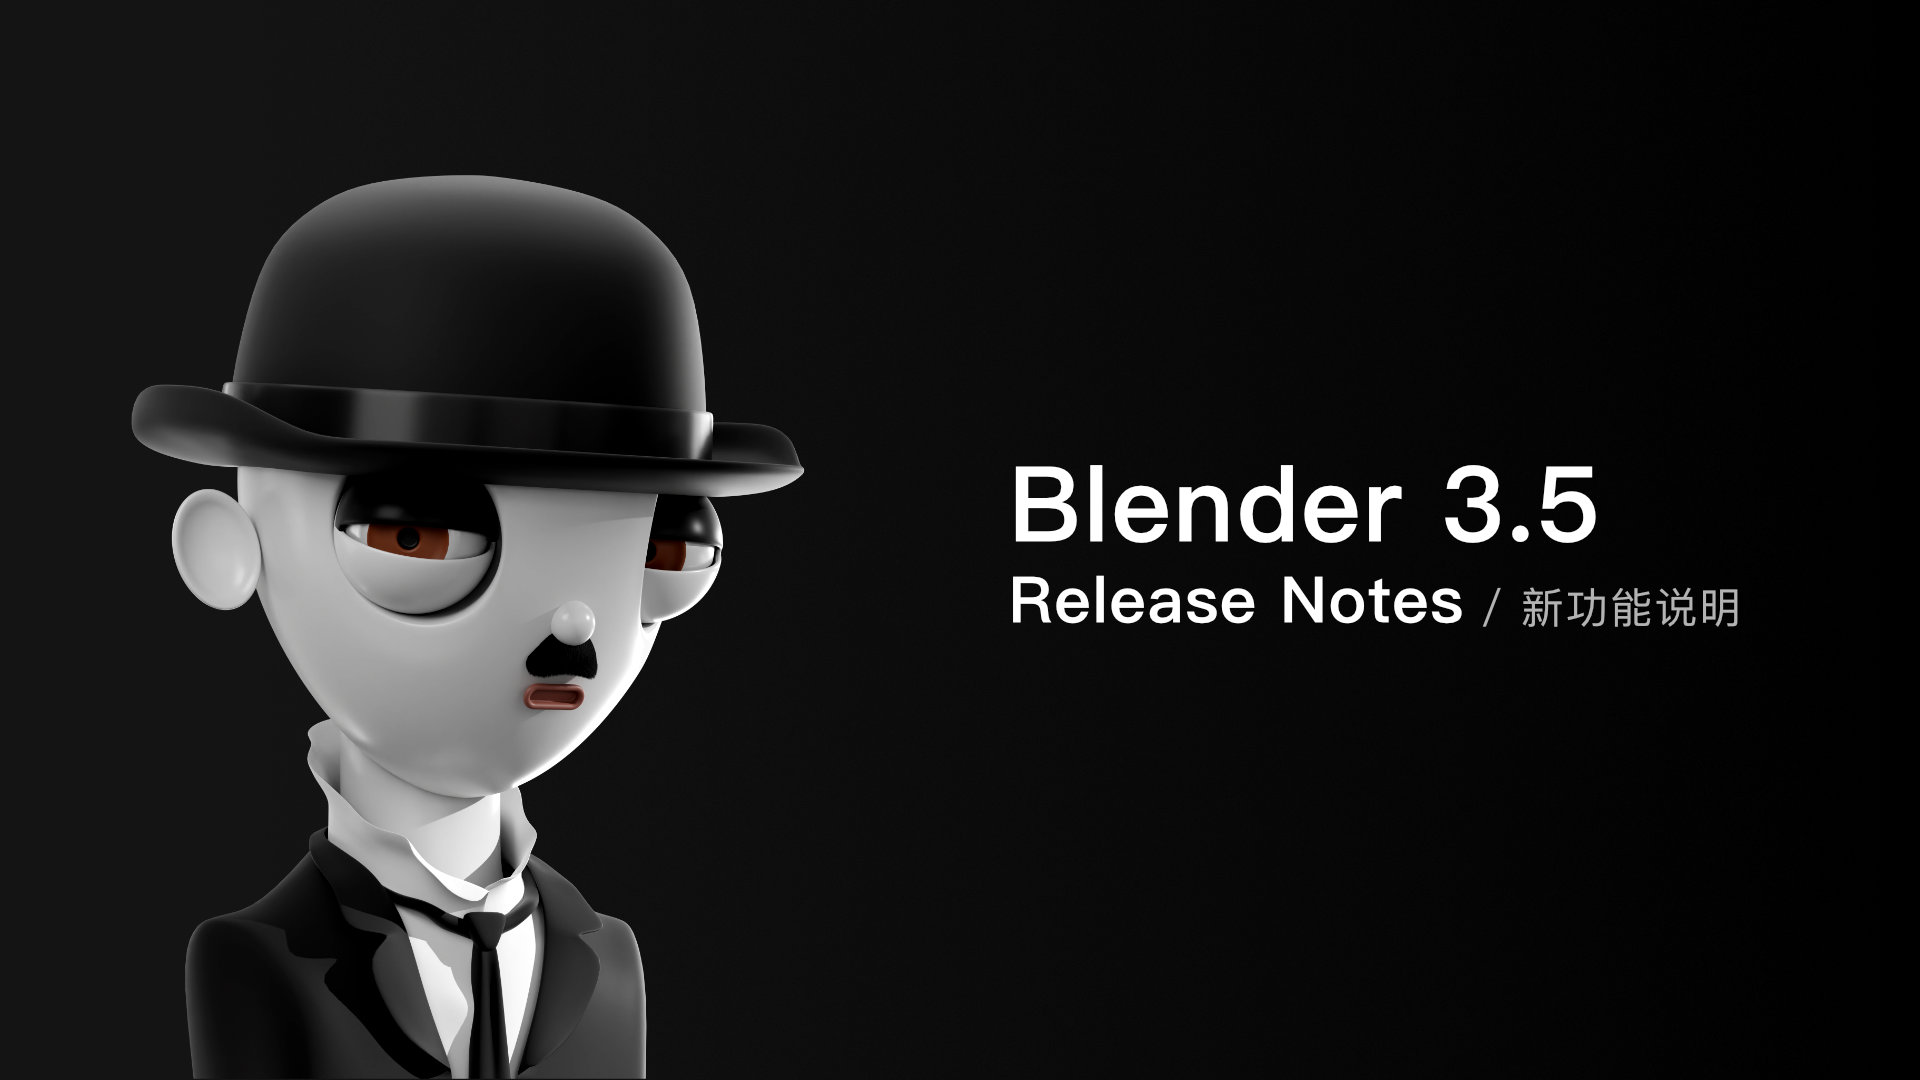 Blender 3.5 Release Notes 新功能说明.jpg